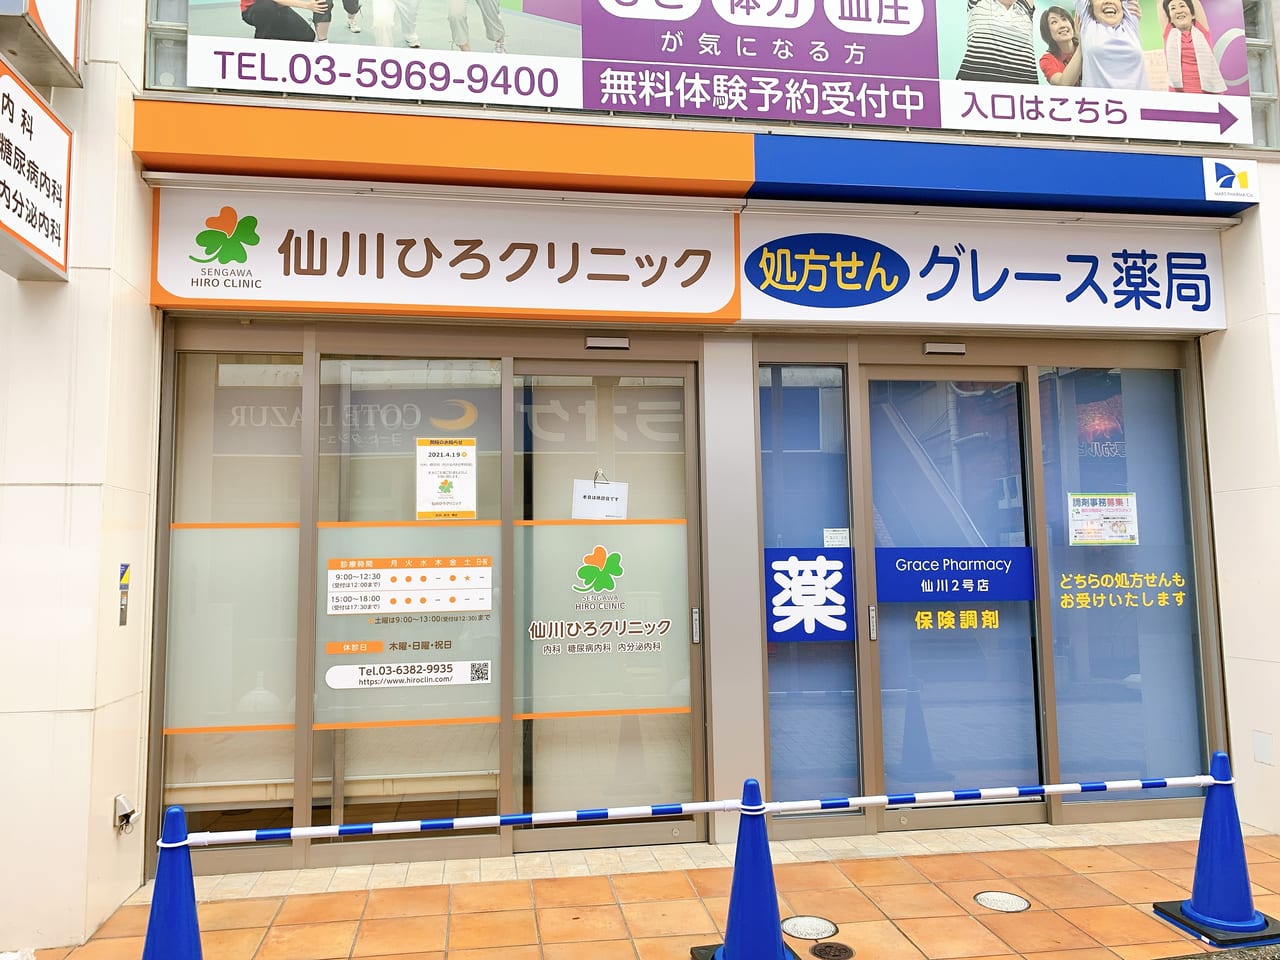 仙川ひろクリニックとグレース薬局がオープンしていました。